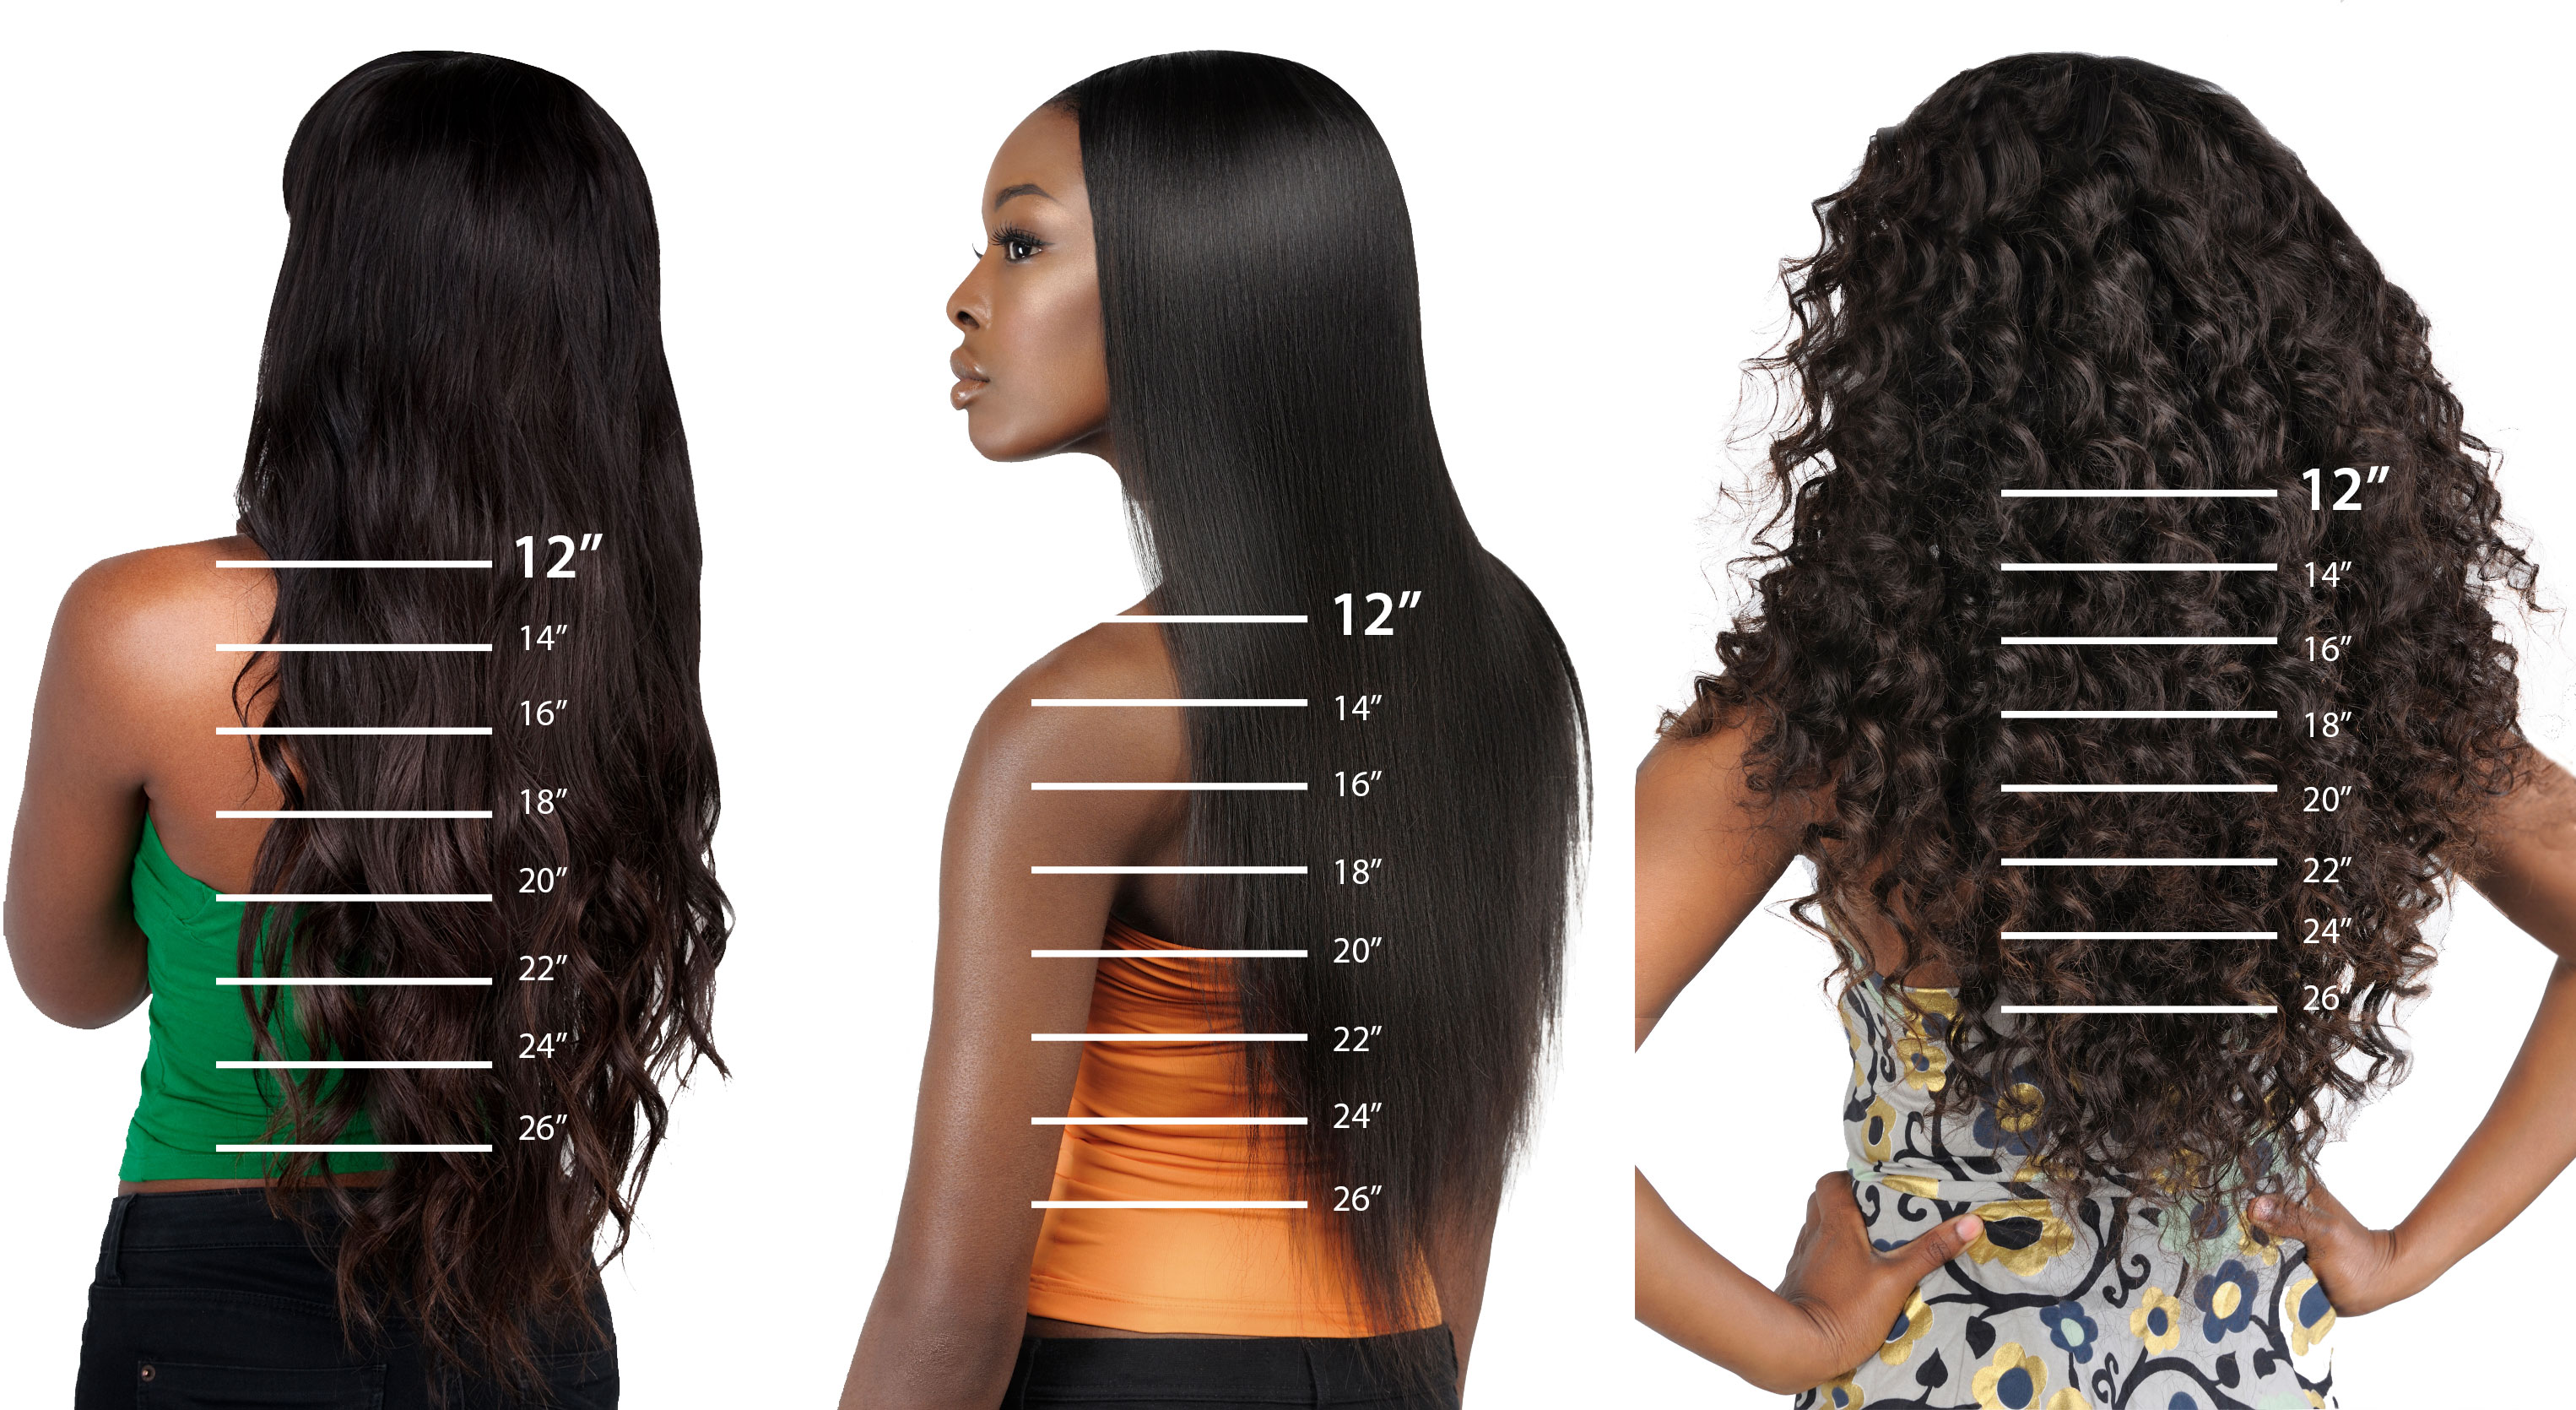 Straight Hair Inch Chart